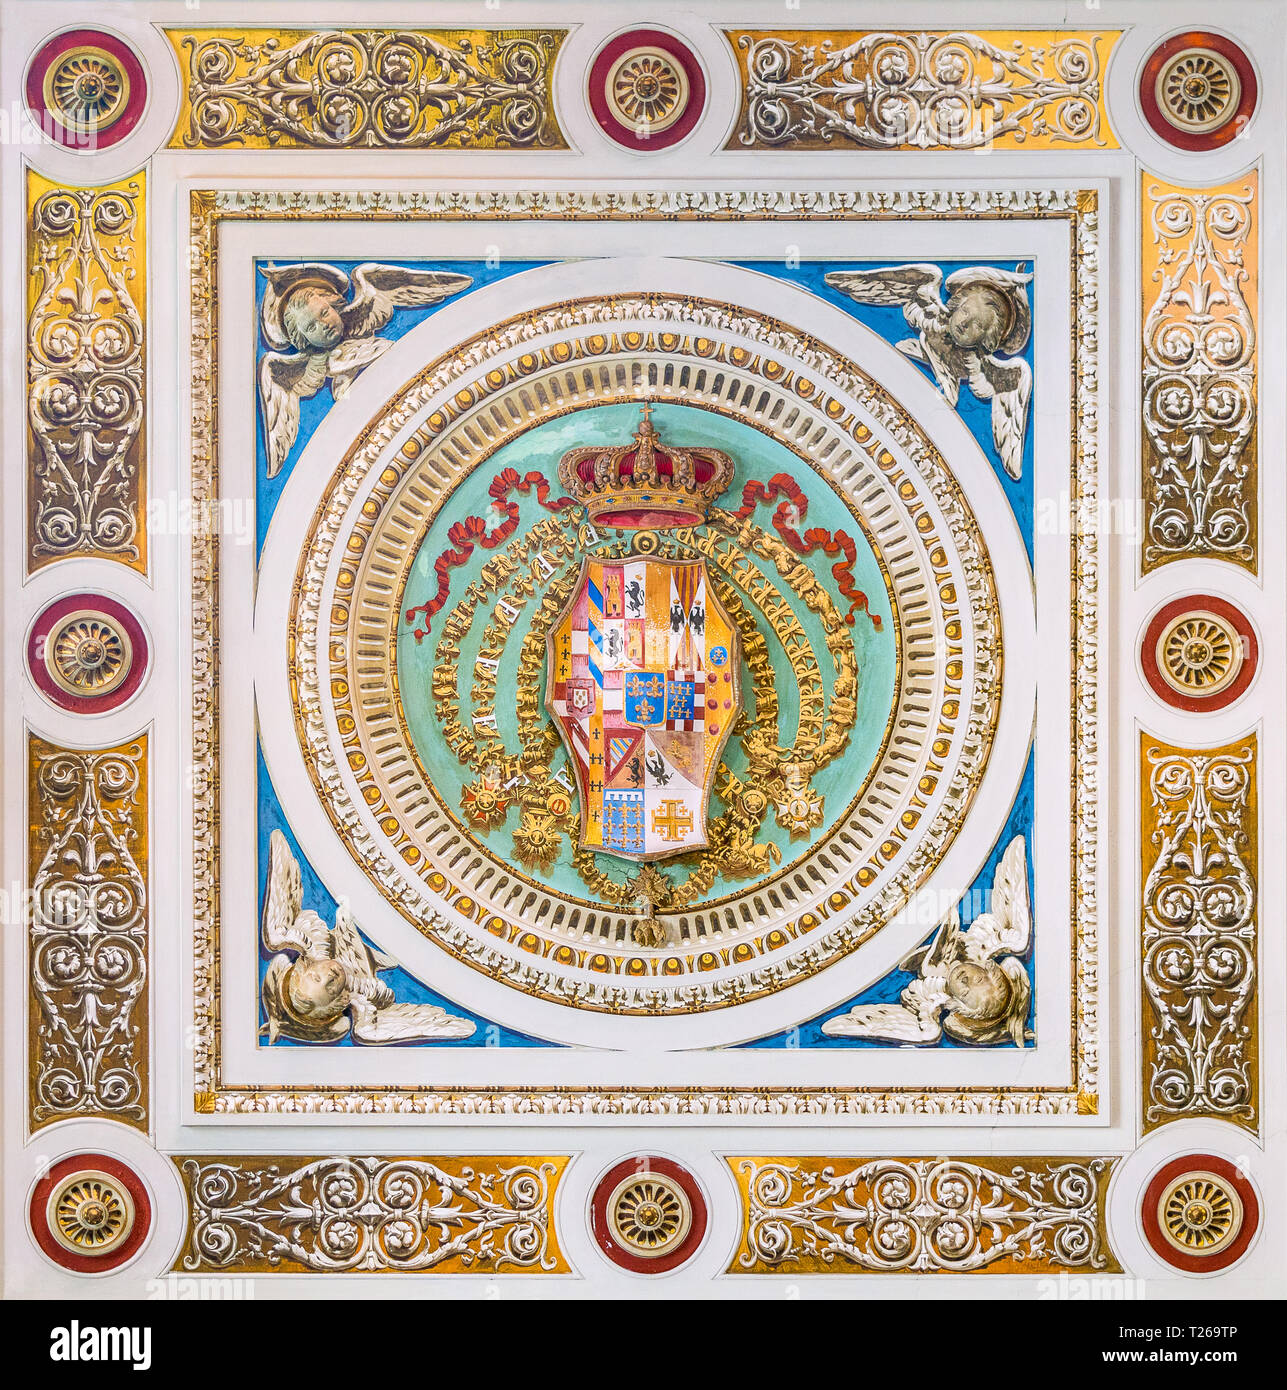 Regno di Napoli coat of arms in the ceiling of the Church of Santo Spirito dei Napoletani in Rome, Italy. Stock Photo